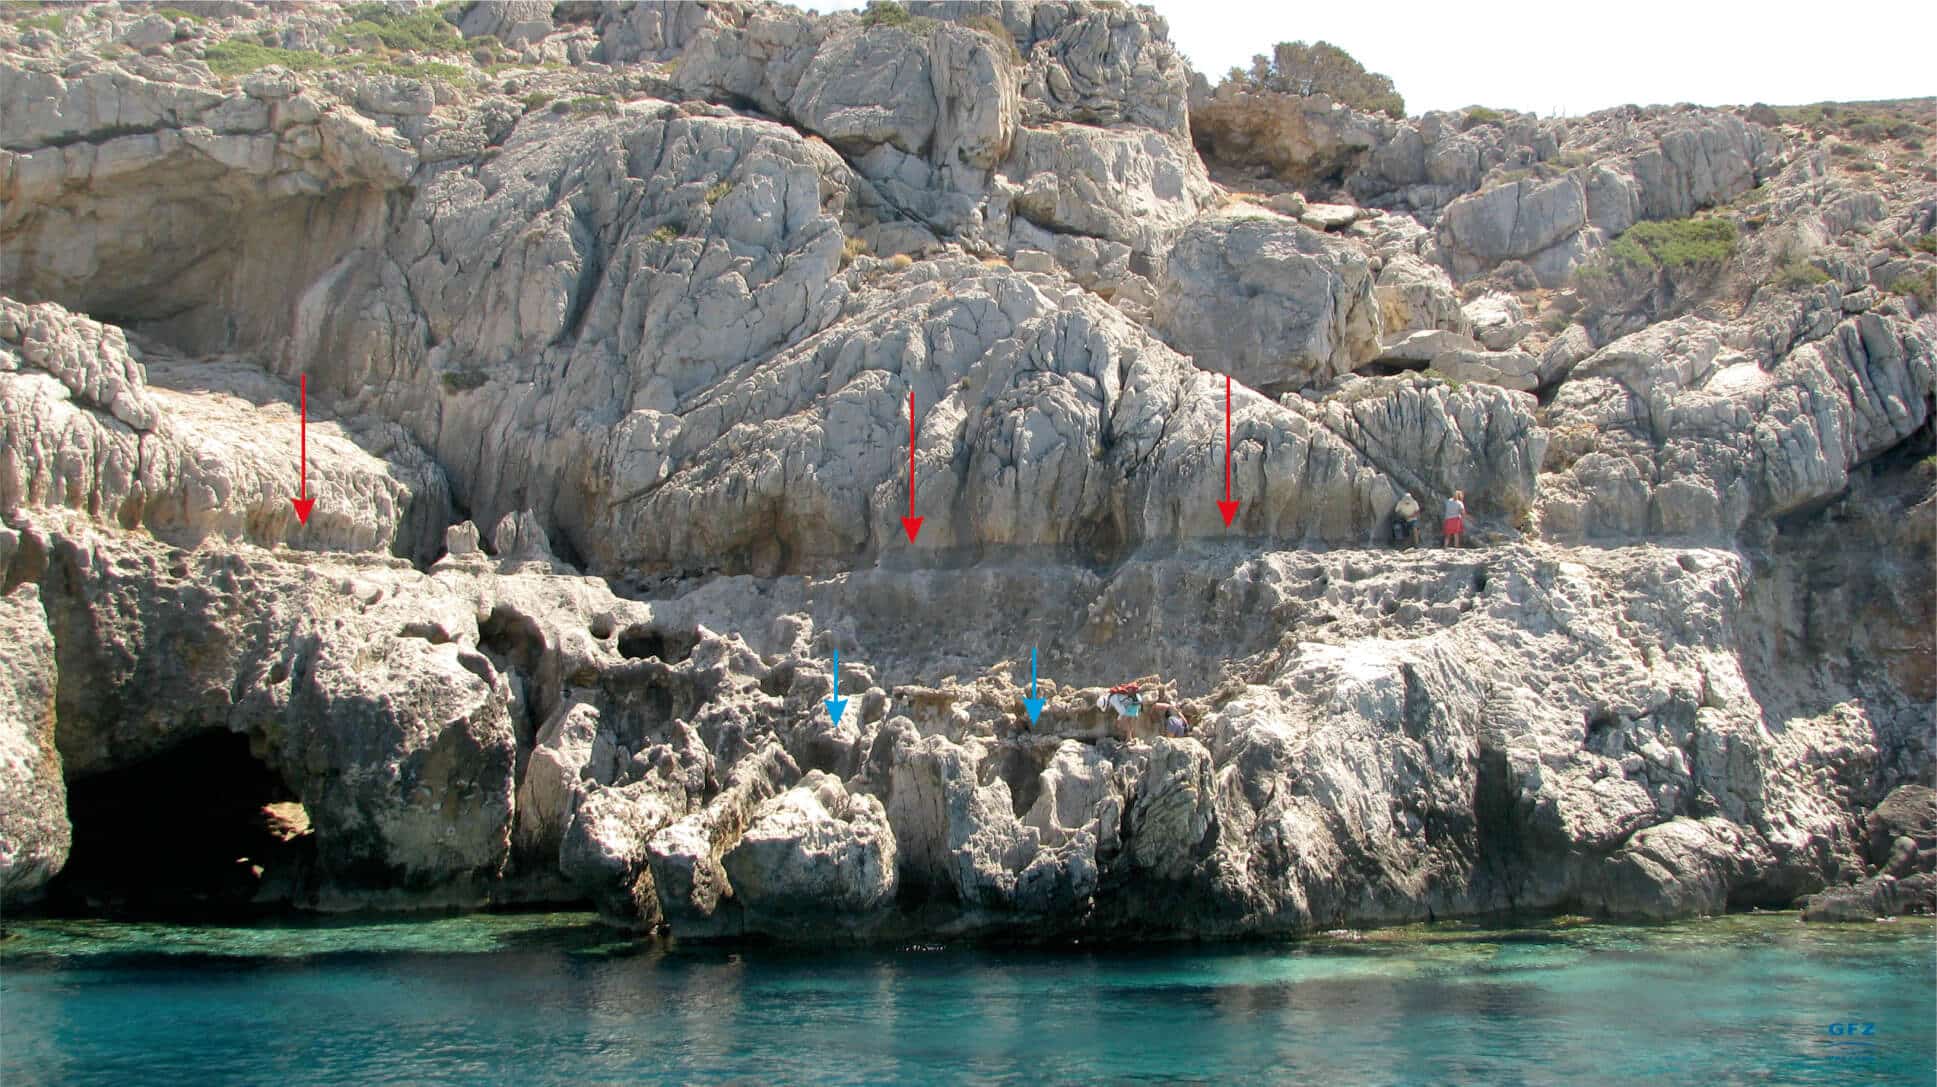 يبحث العلماء عن بقايا الشواطئ القديمة في غرب جزيرة كريت. تشير الأسهم الحمراء والزرقاء إلى الشواطئ القديمة التي تشكلت على مدى 2,000 عام الماضية، والتي يصل ارتفاعها الآن إلى 8 أمتار فوق الماء. الصورة: فاسيلي موسلوبولو GFZ،